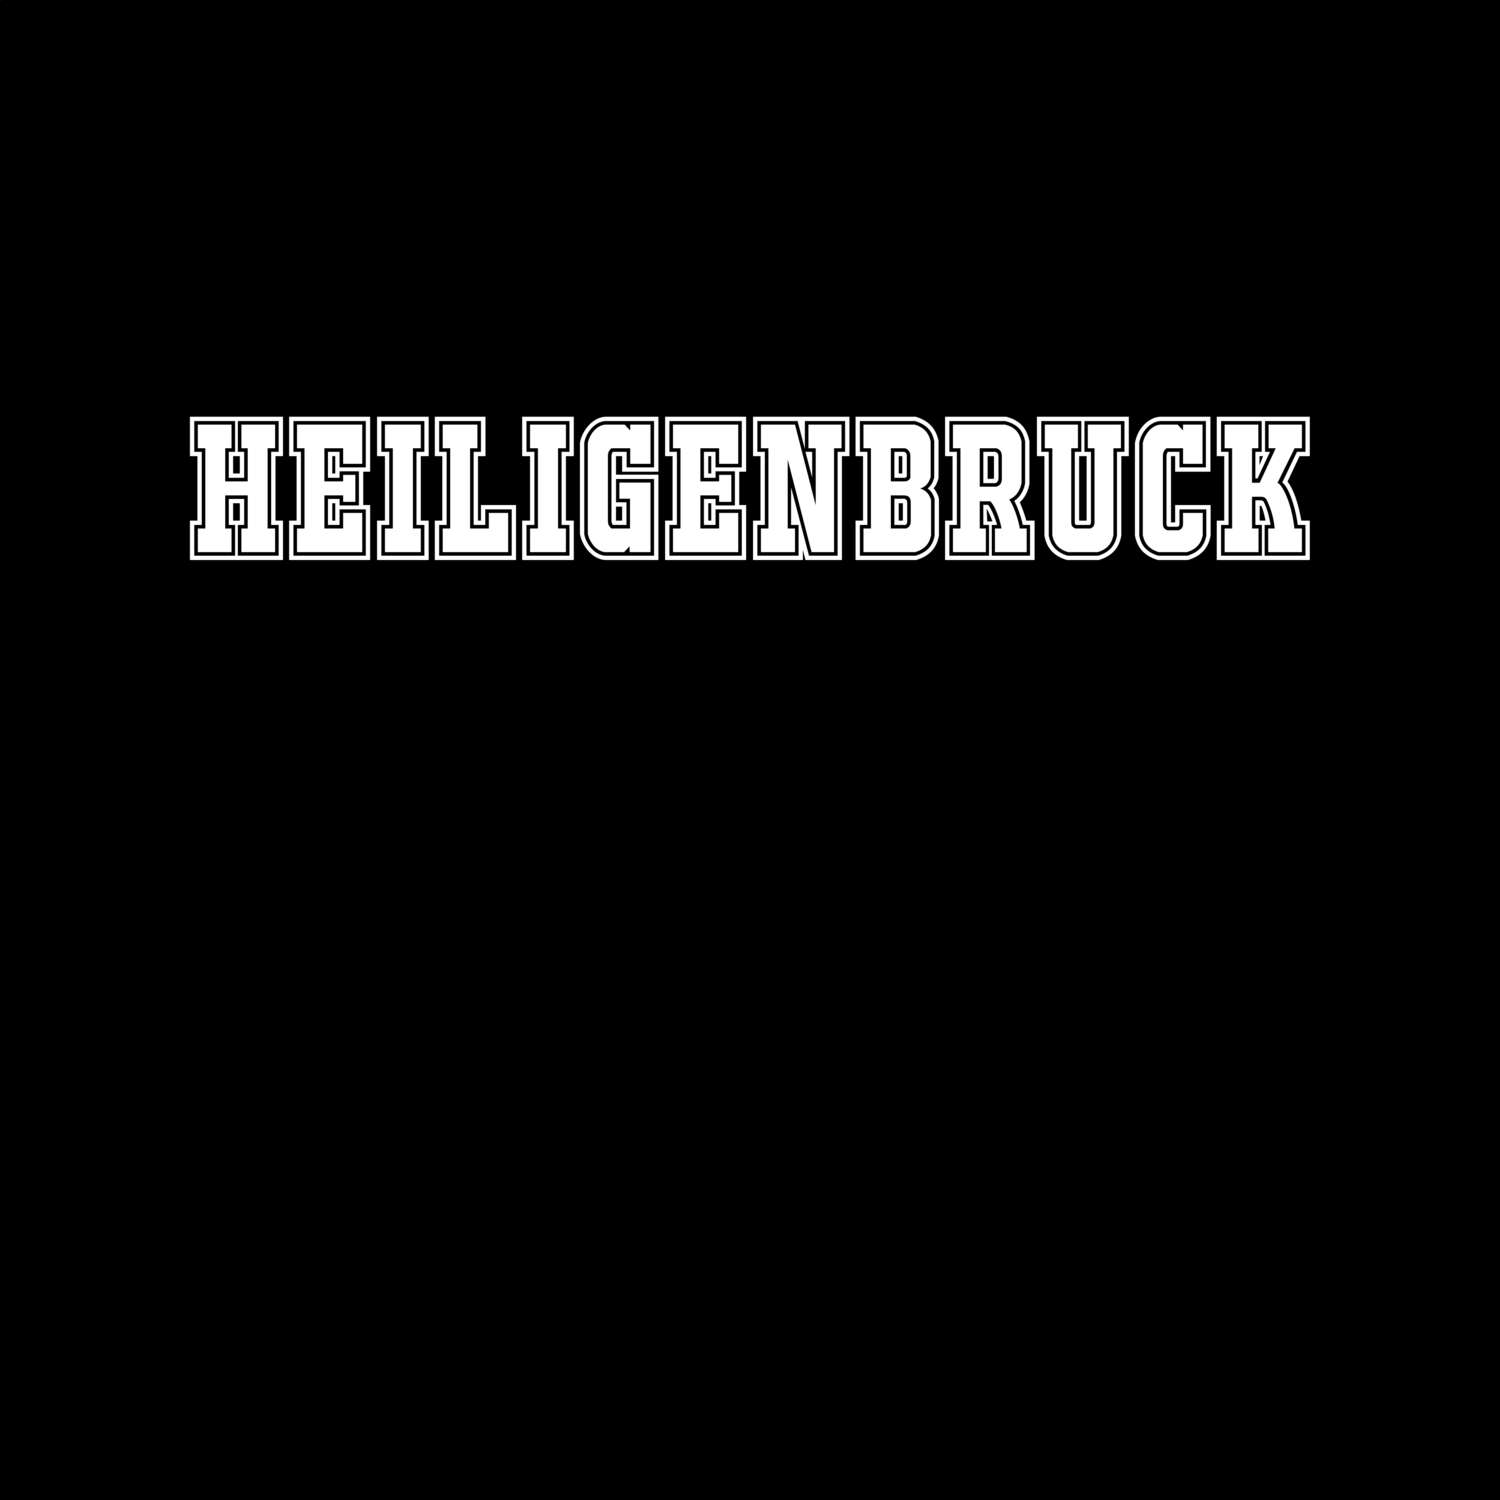 Heiligenbruck T-Shirt »Classic«